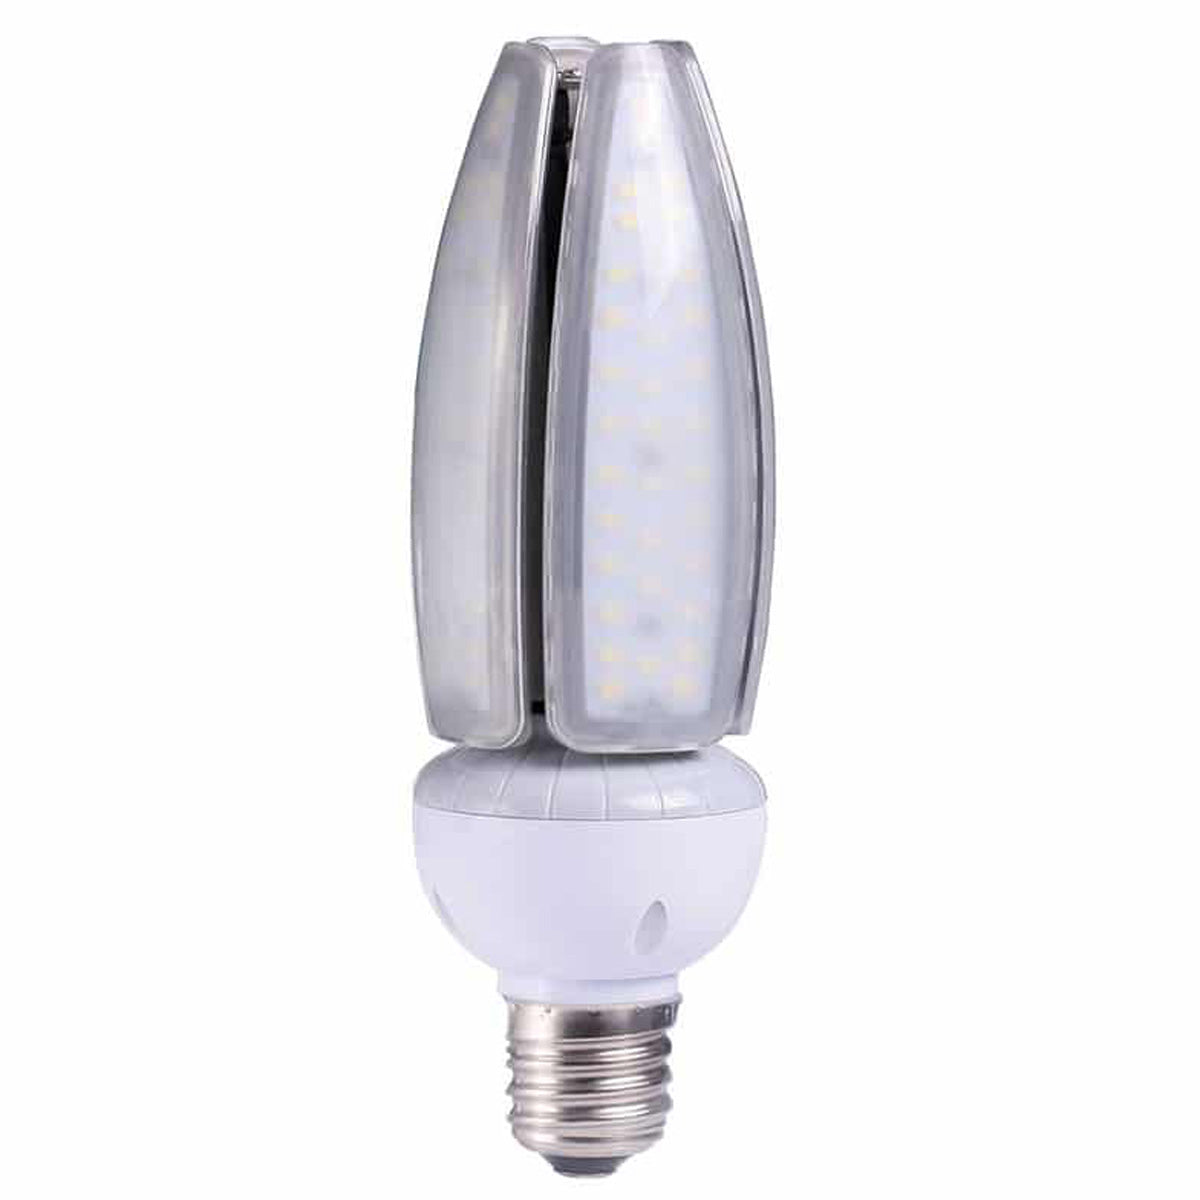 LED Lamp Post – 30 Watt